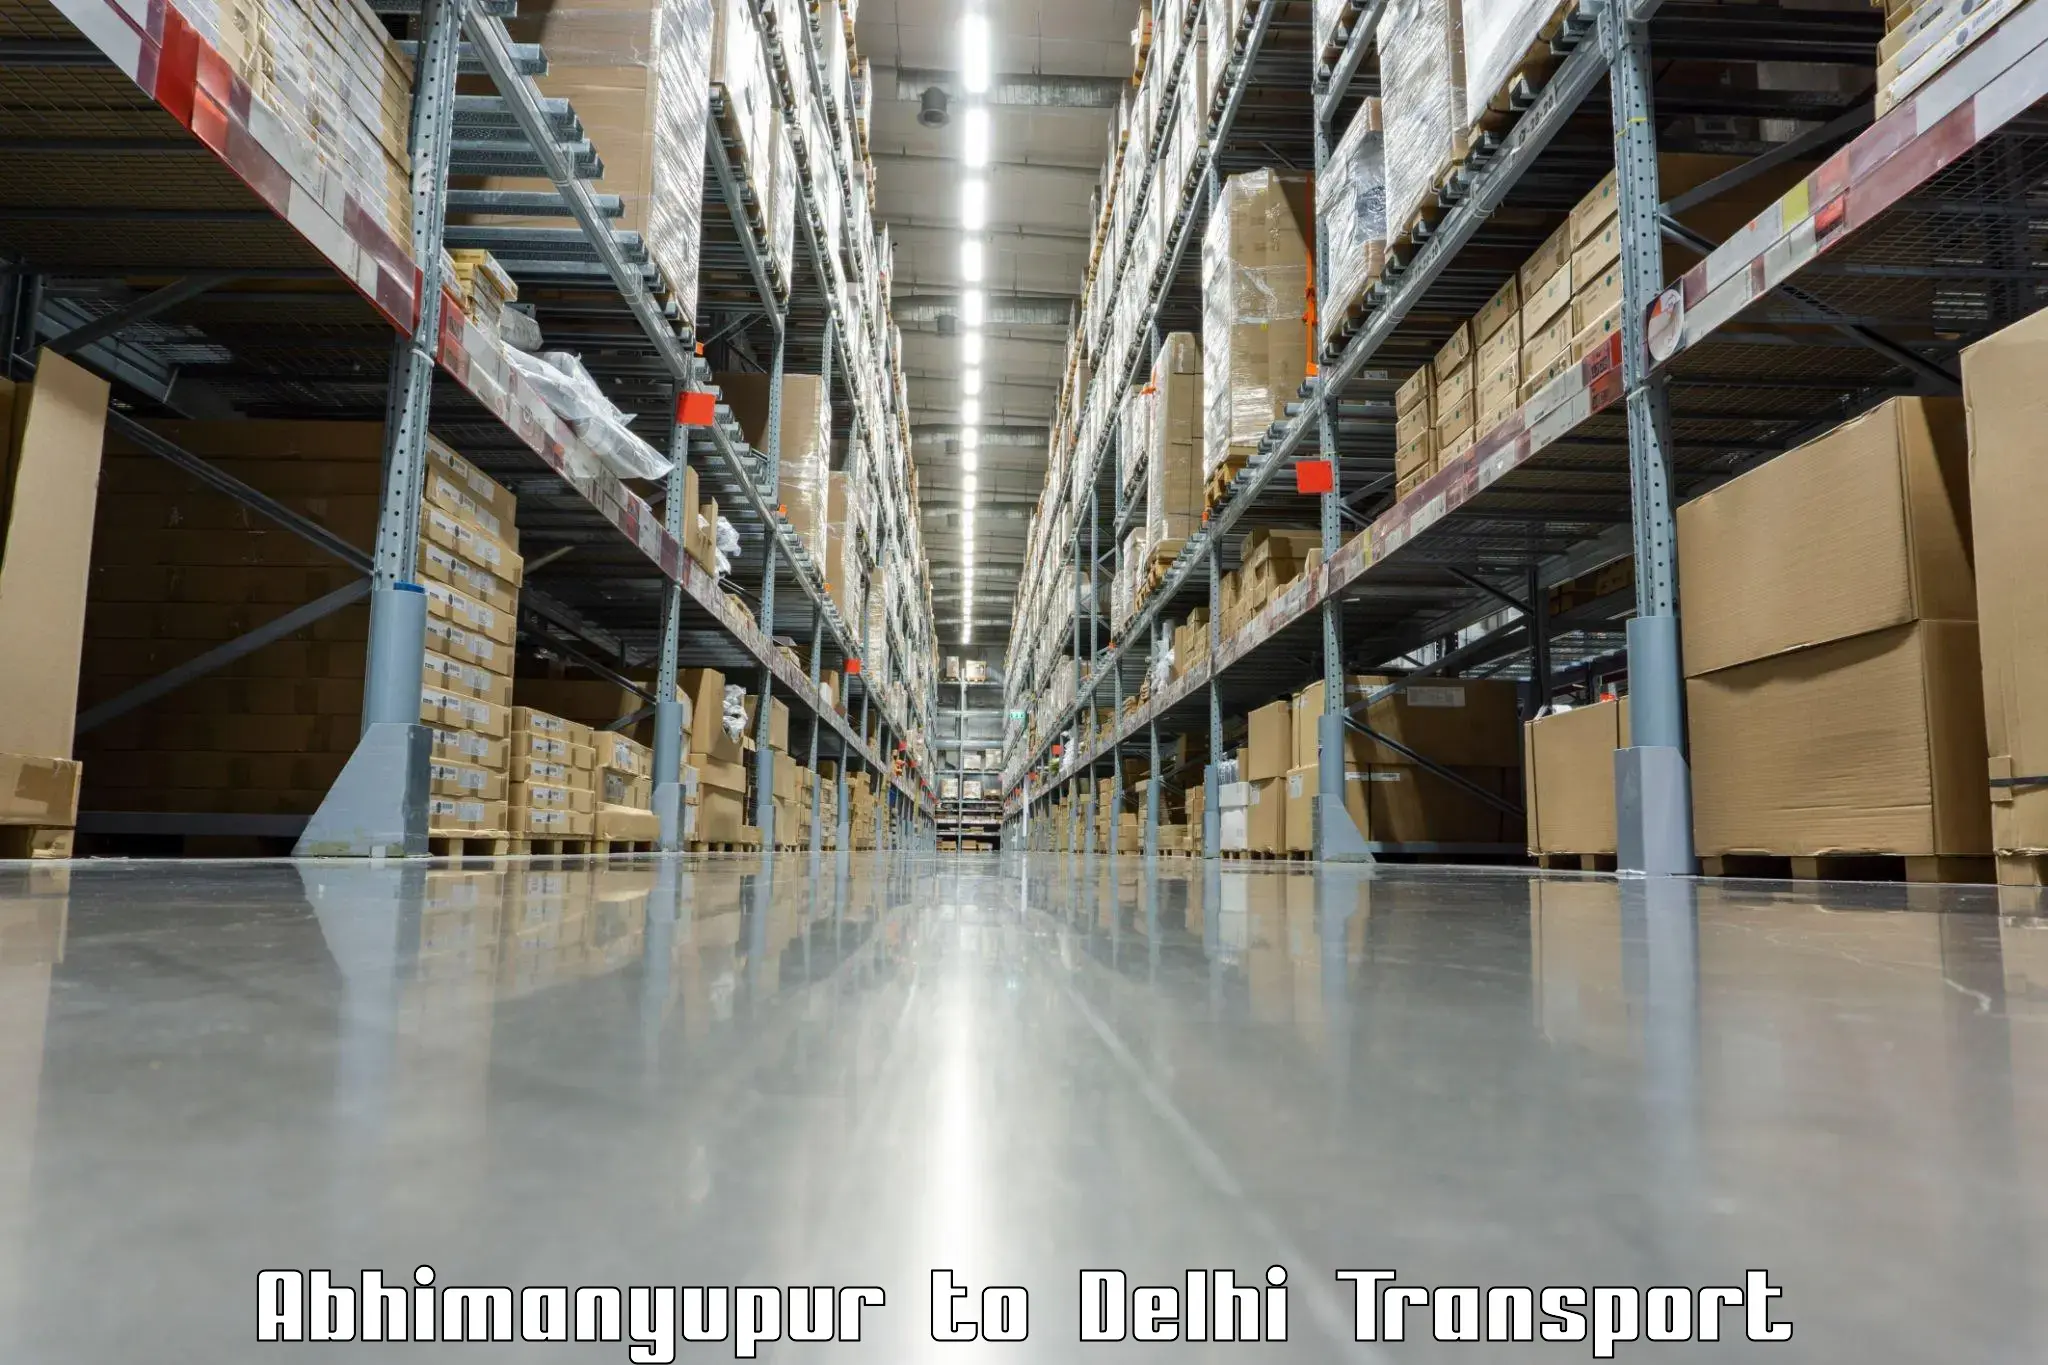 Door to door transport services Abhimanyupur to Jamia Millia Islamia New Delhi